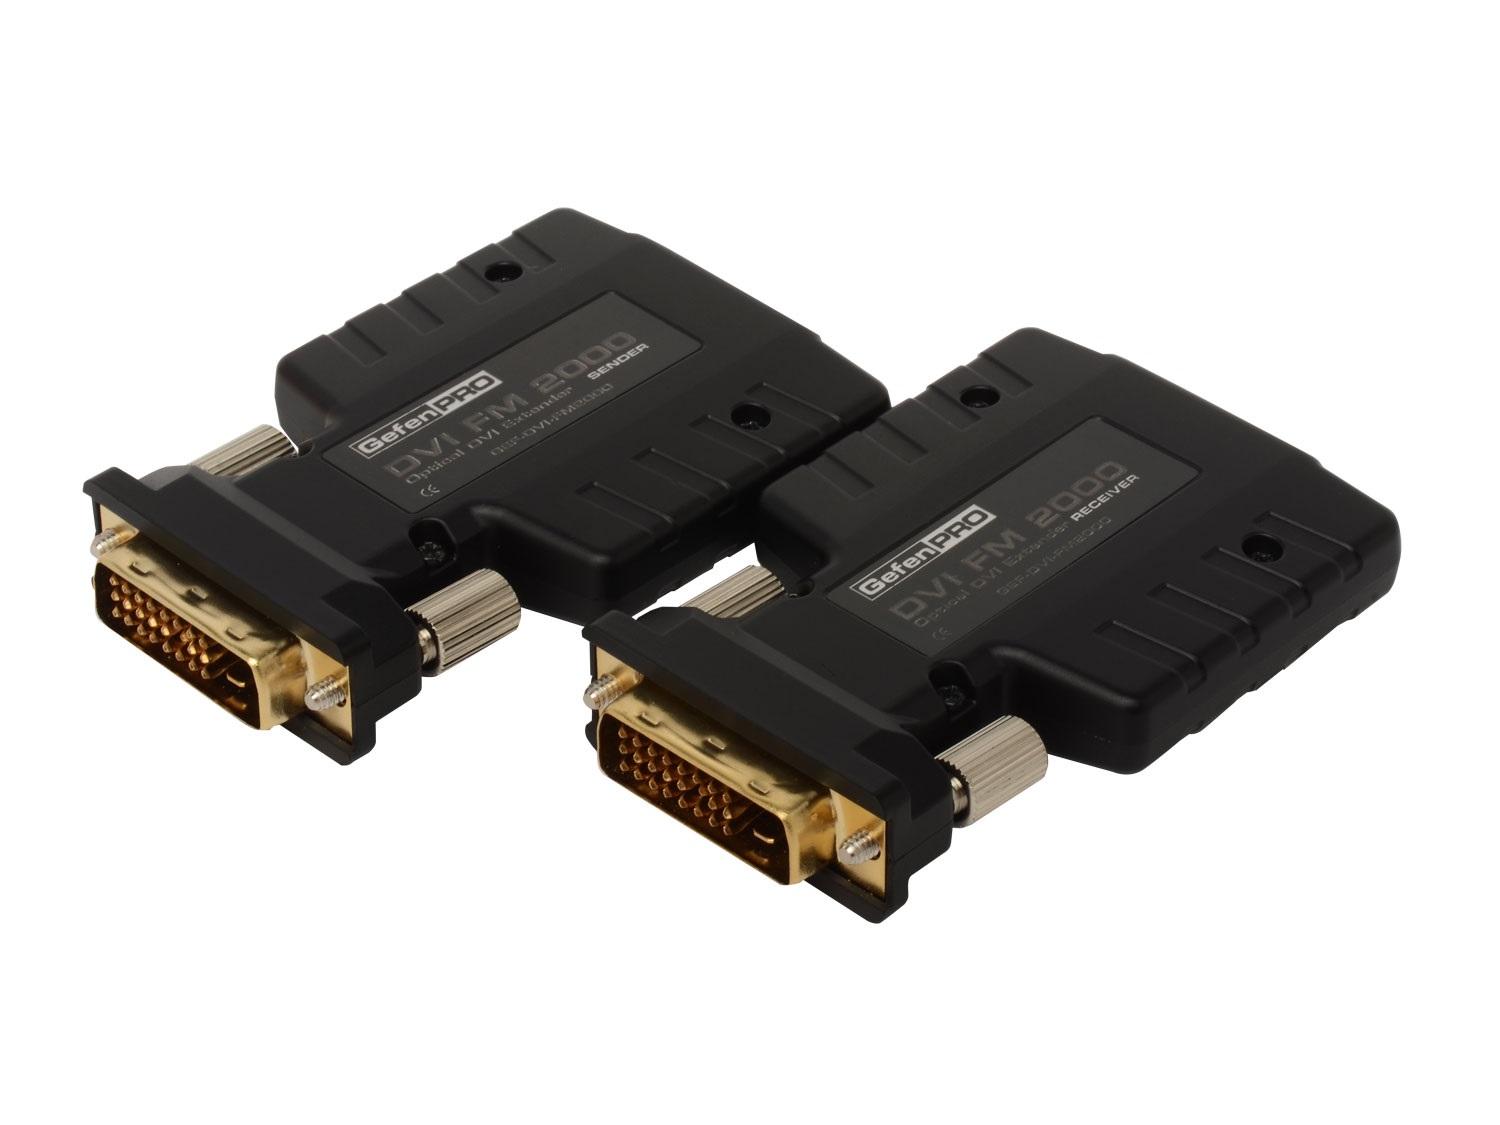 Gefen GEF-DVI-FM2000 PRO Dual Link DVI Fiber Optic Extender (Receiver/Sender) Kit